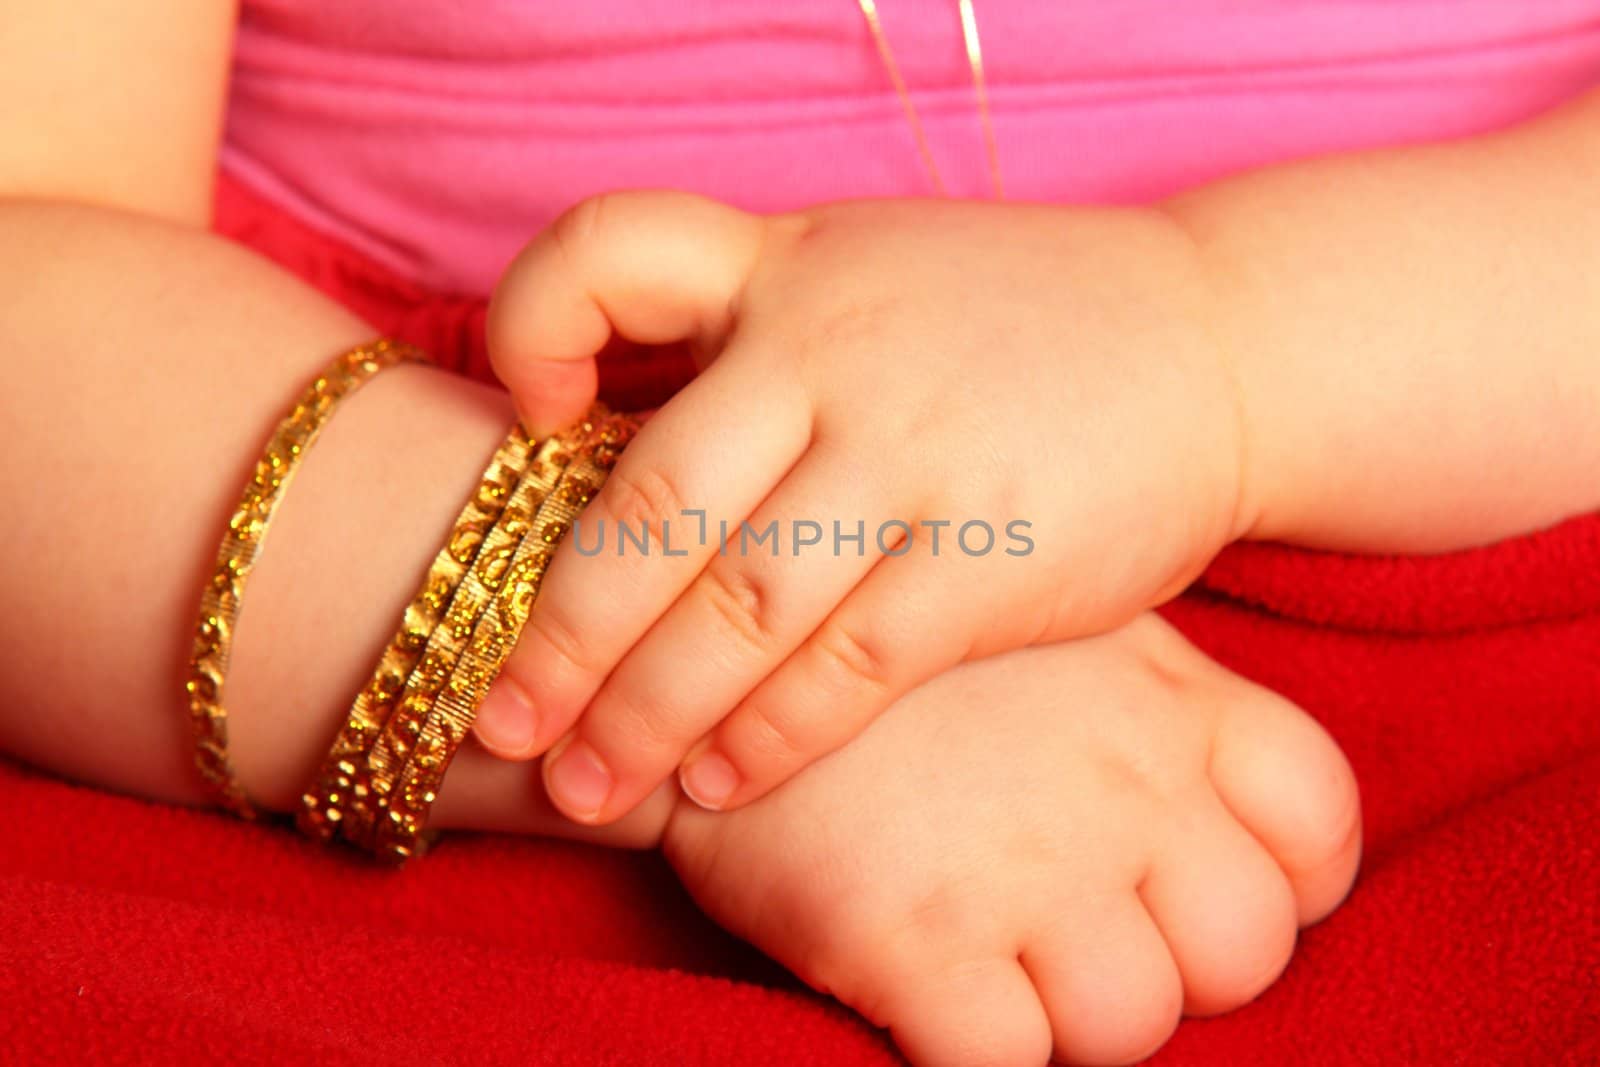 Baby hands by Arvebettum